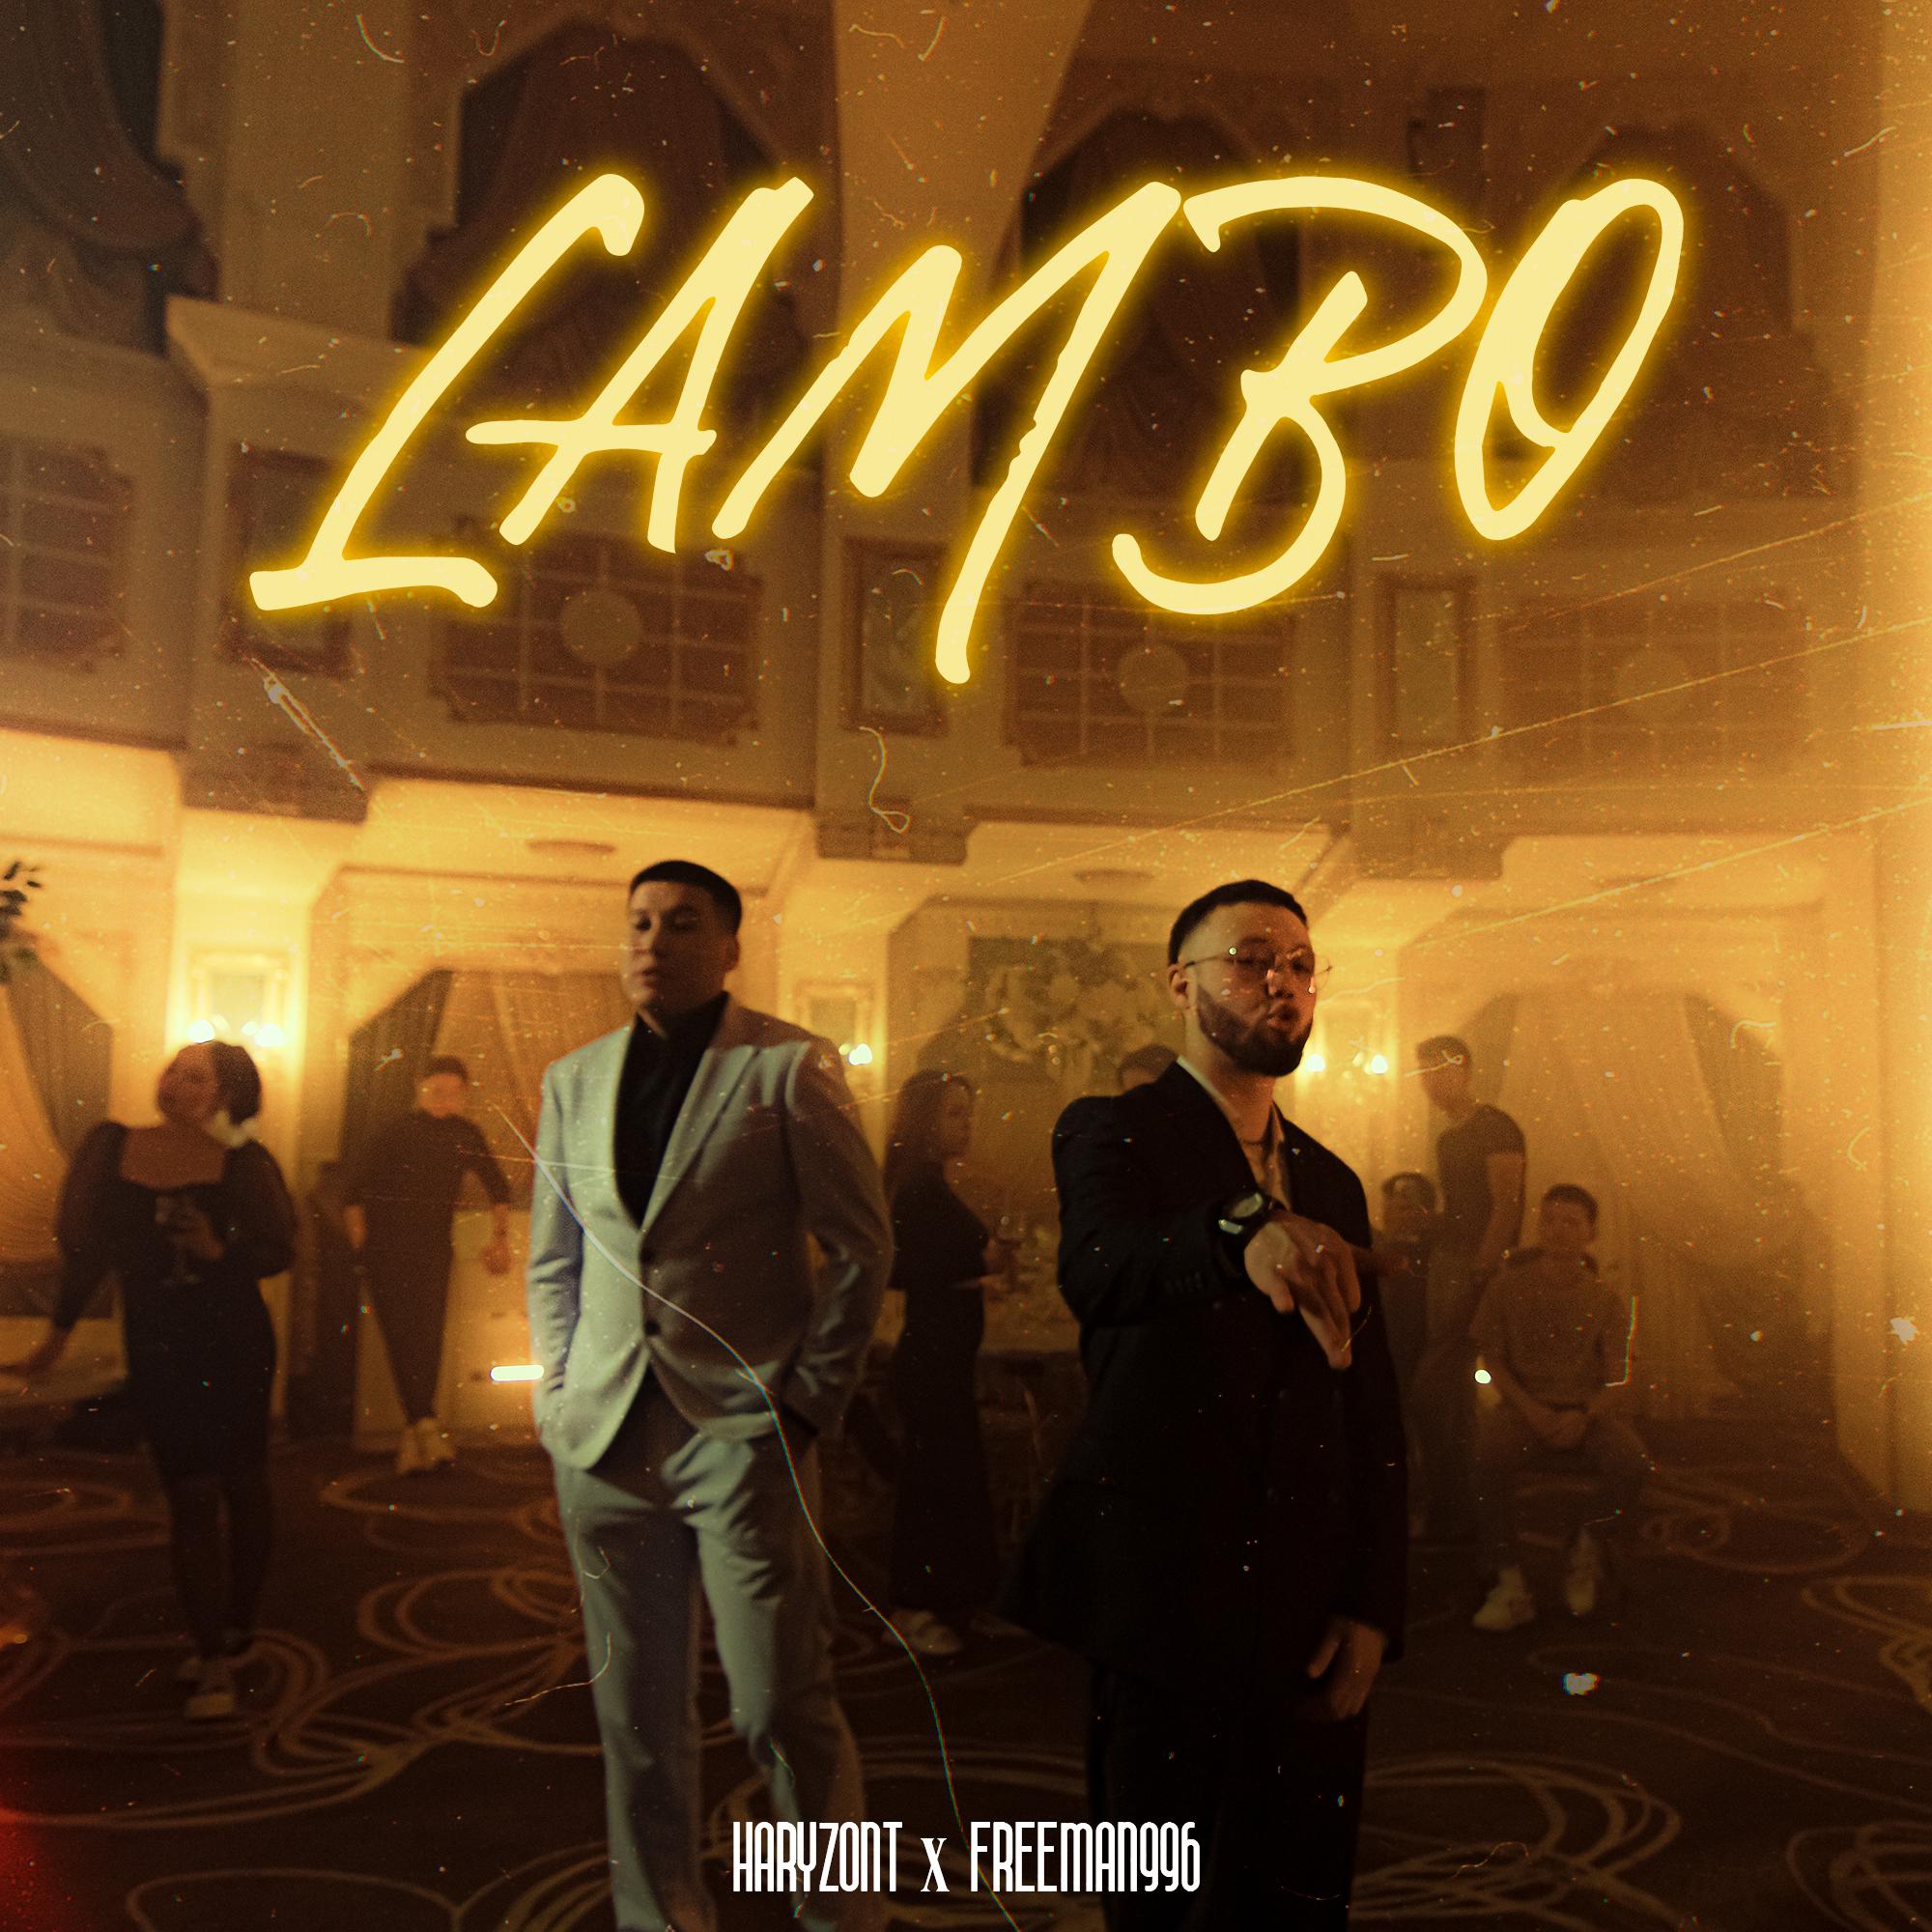 Постер альбома LAMBO